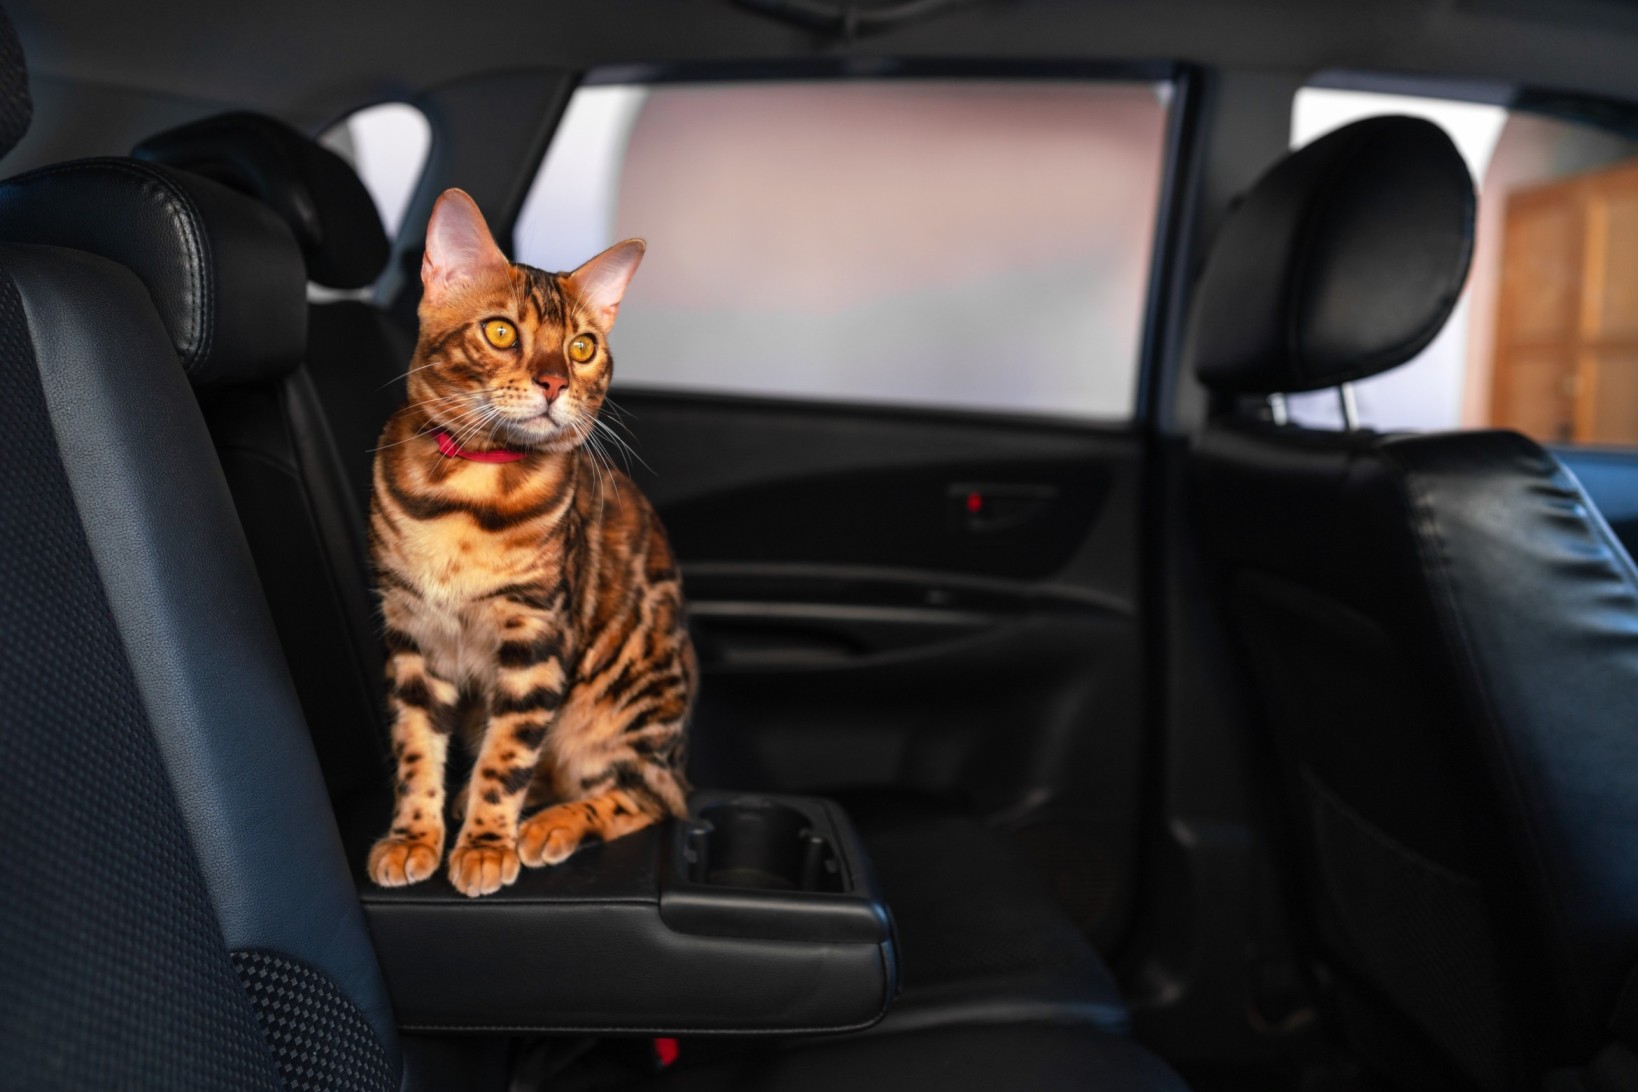 A cat sitting inside a car